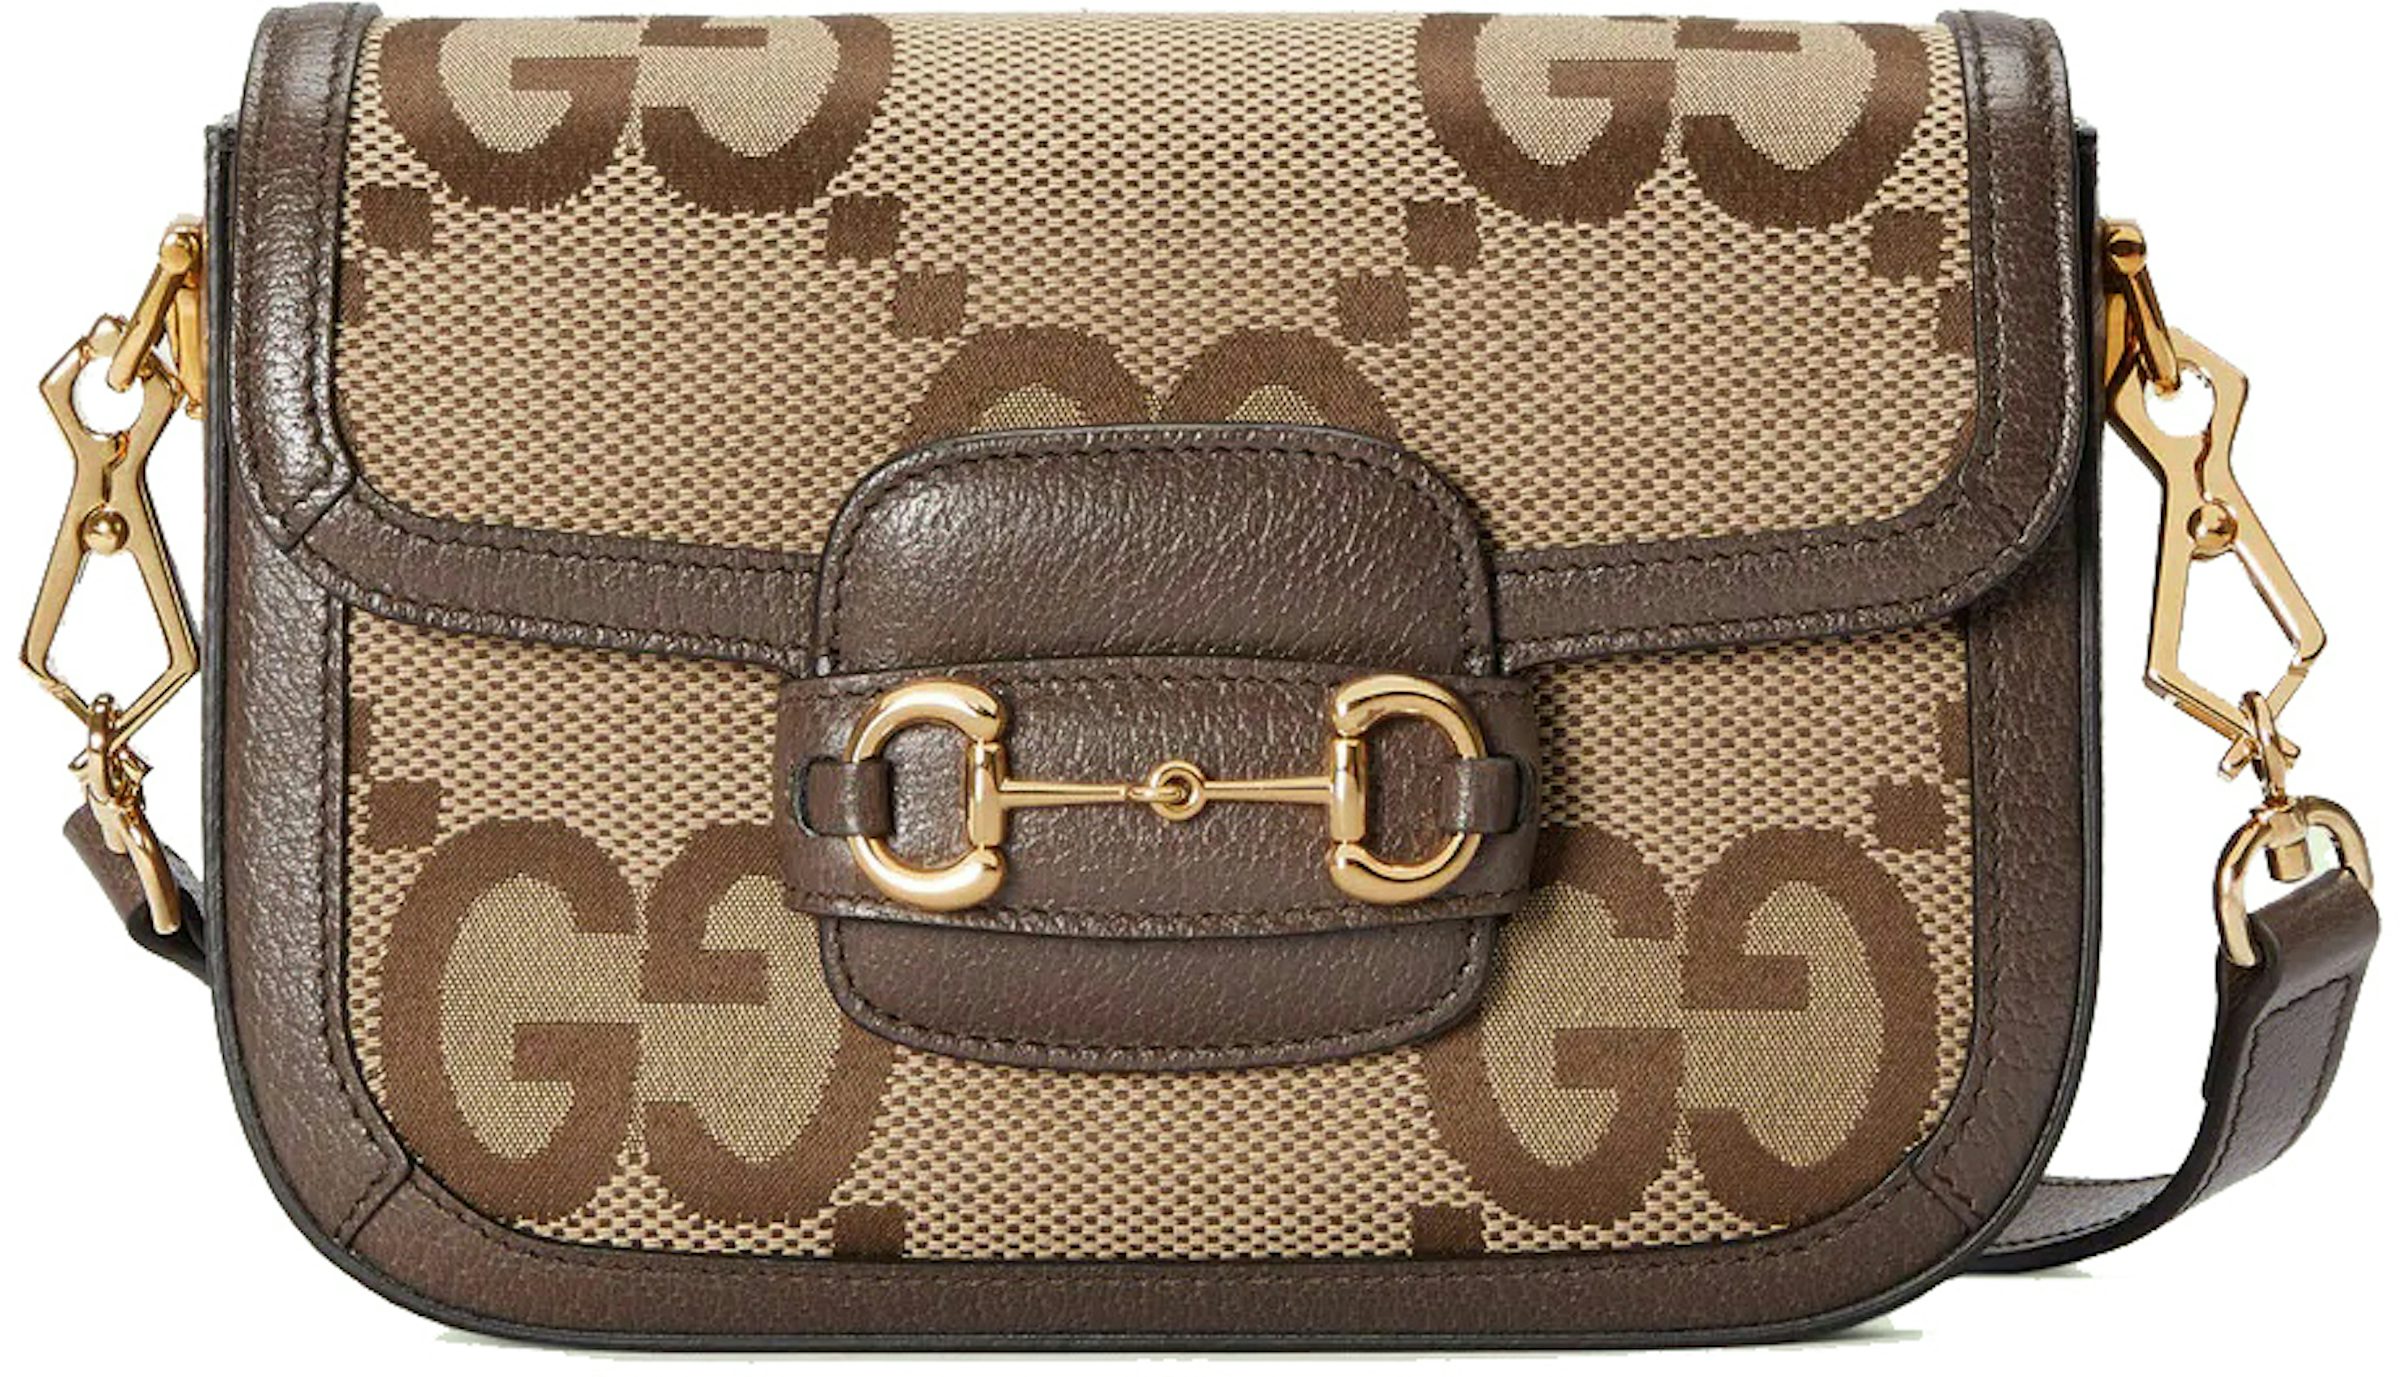 Gucci Horsebit 1955 GG Small Crossbody Bag